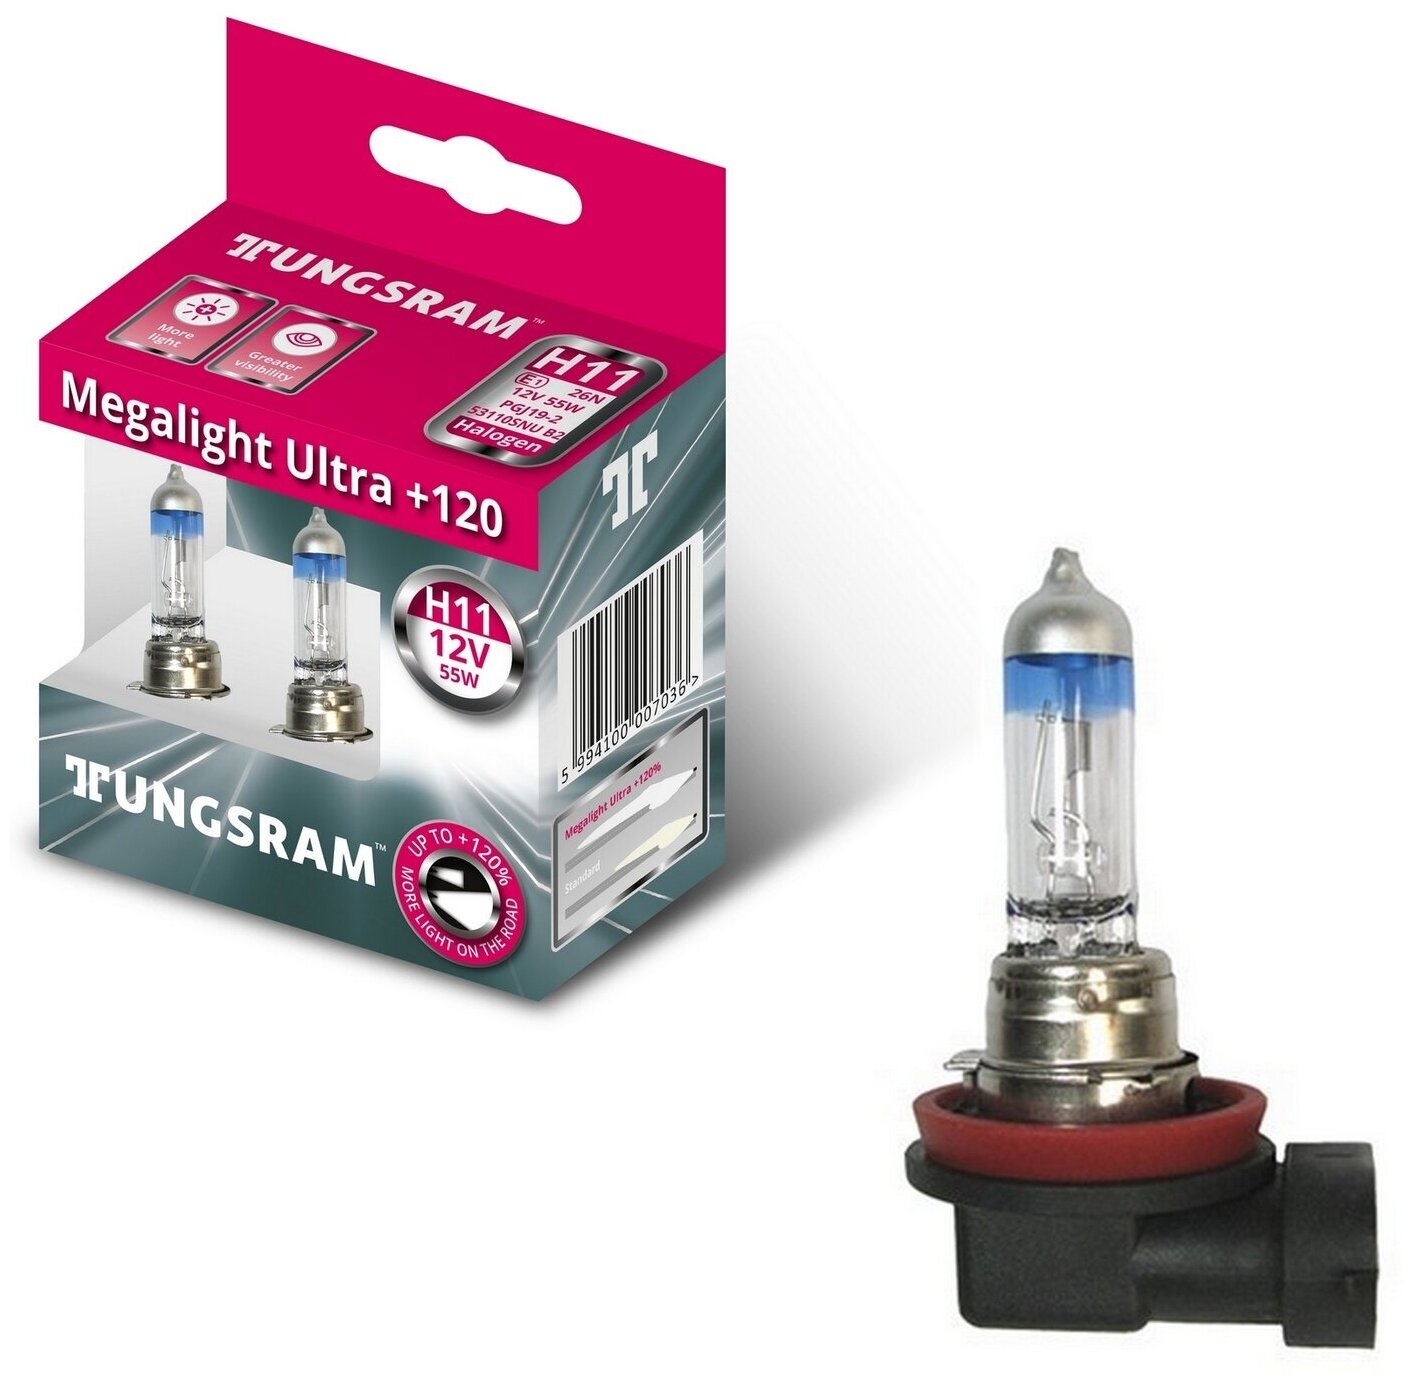 Лампы TUNGSRAM "Megalight Ultra +120"